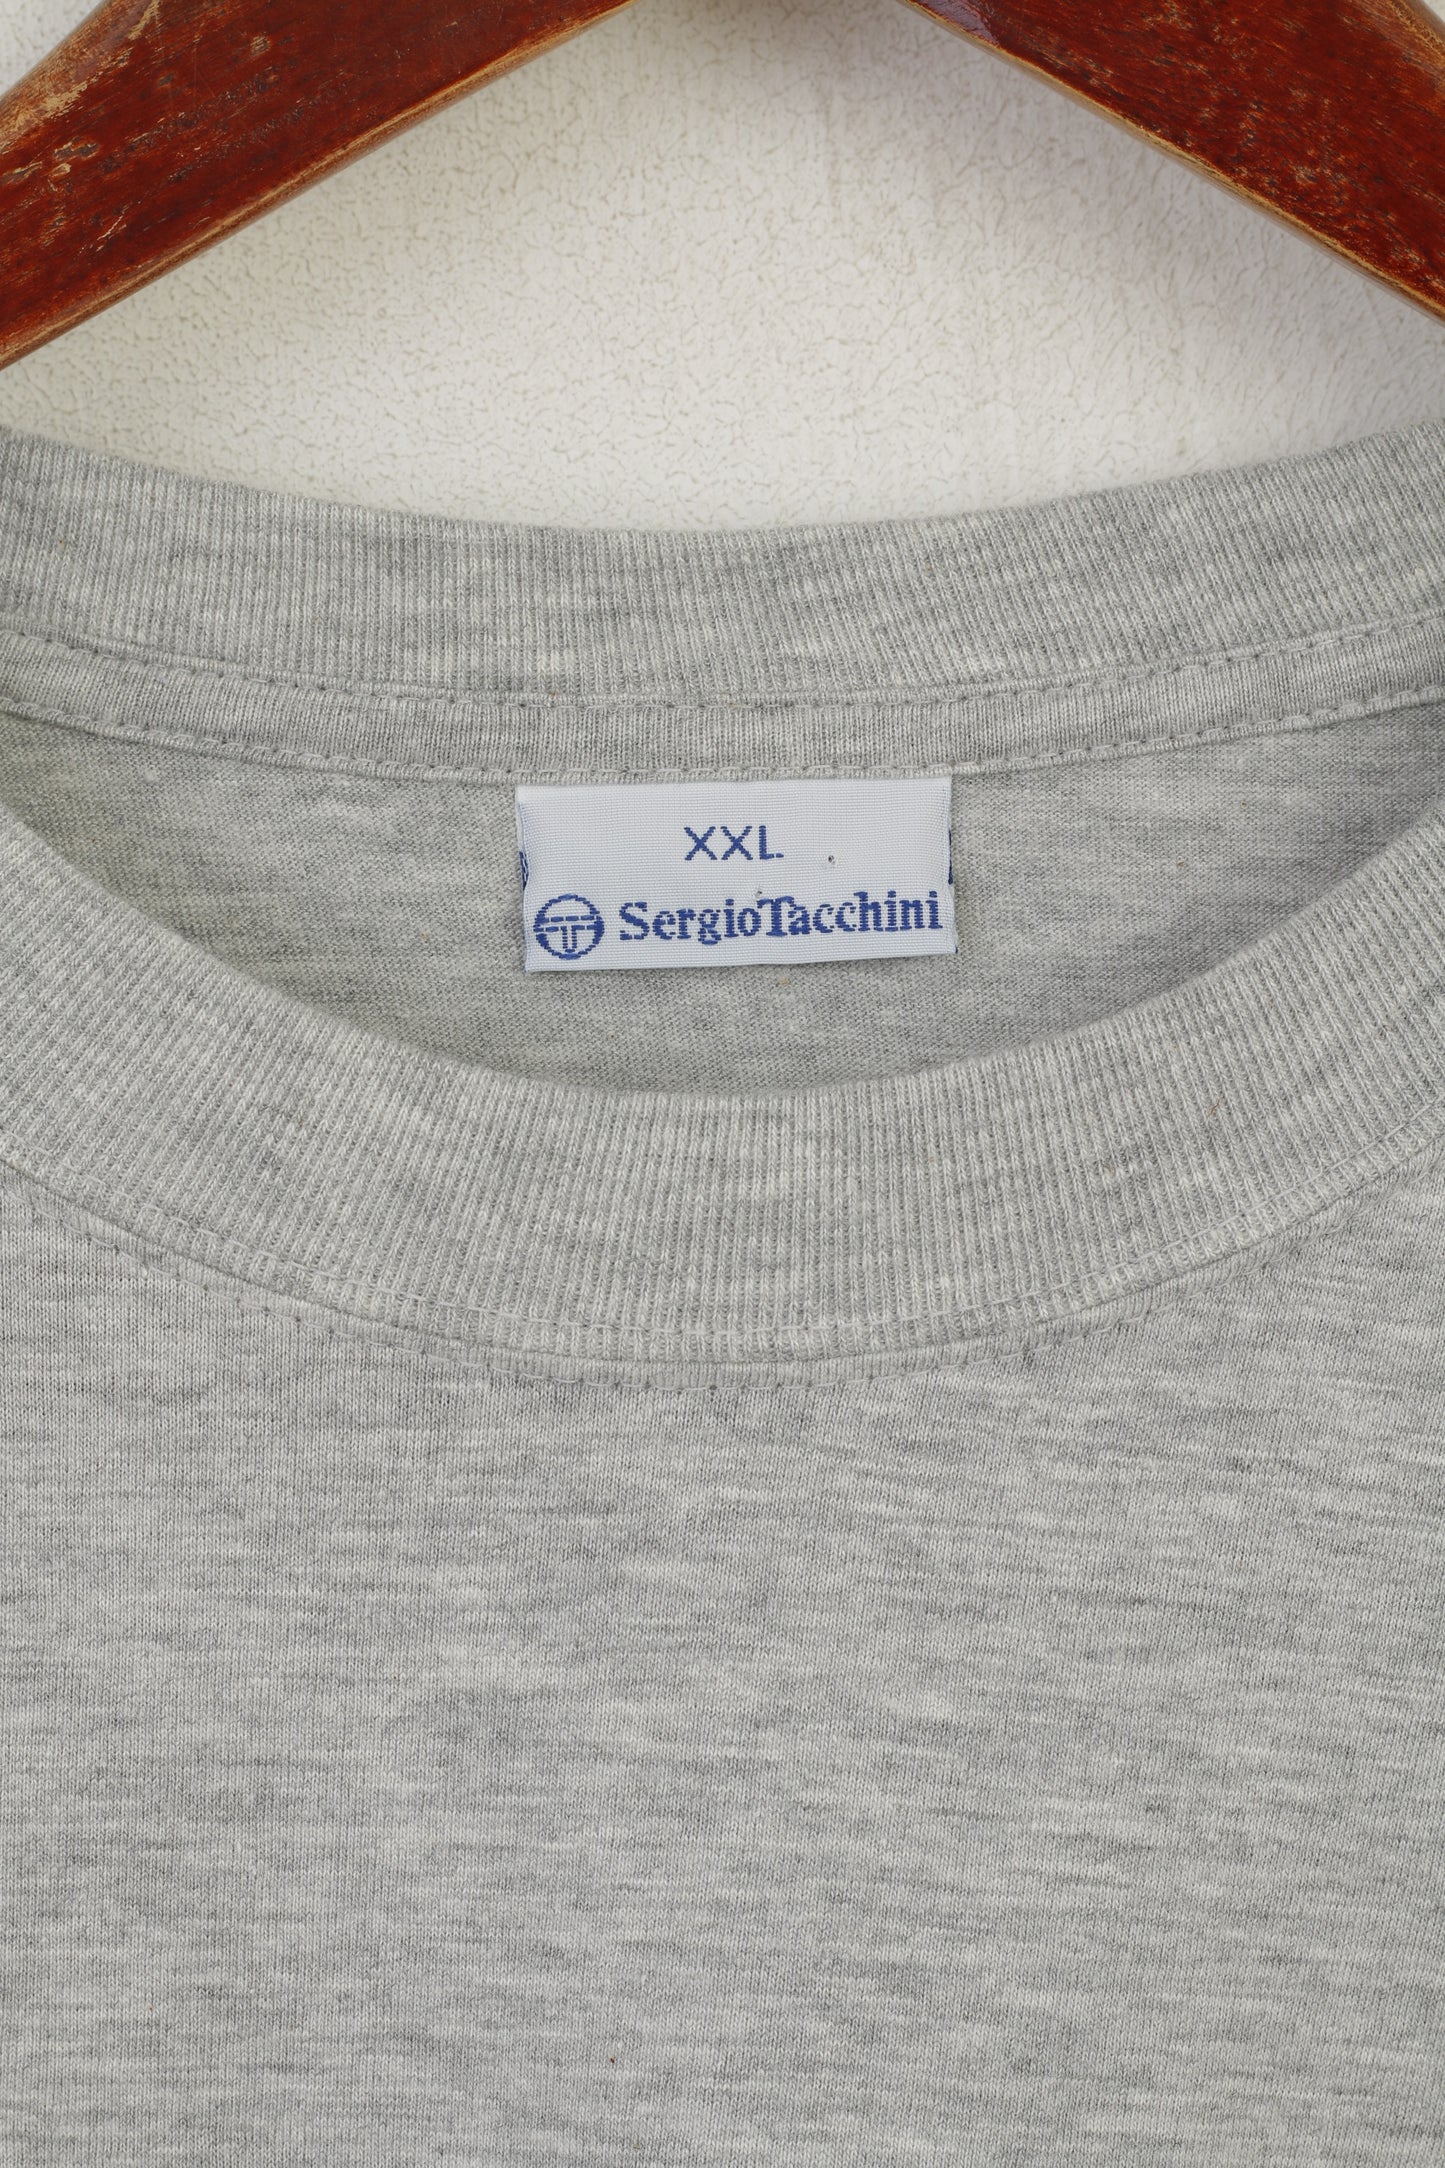 Sergio Tacchini Hommes XXL T-Shirt Gris Coton Long Haut Logo Graphique Haut